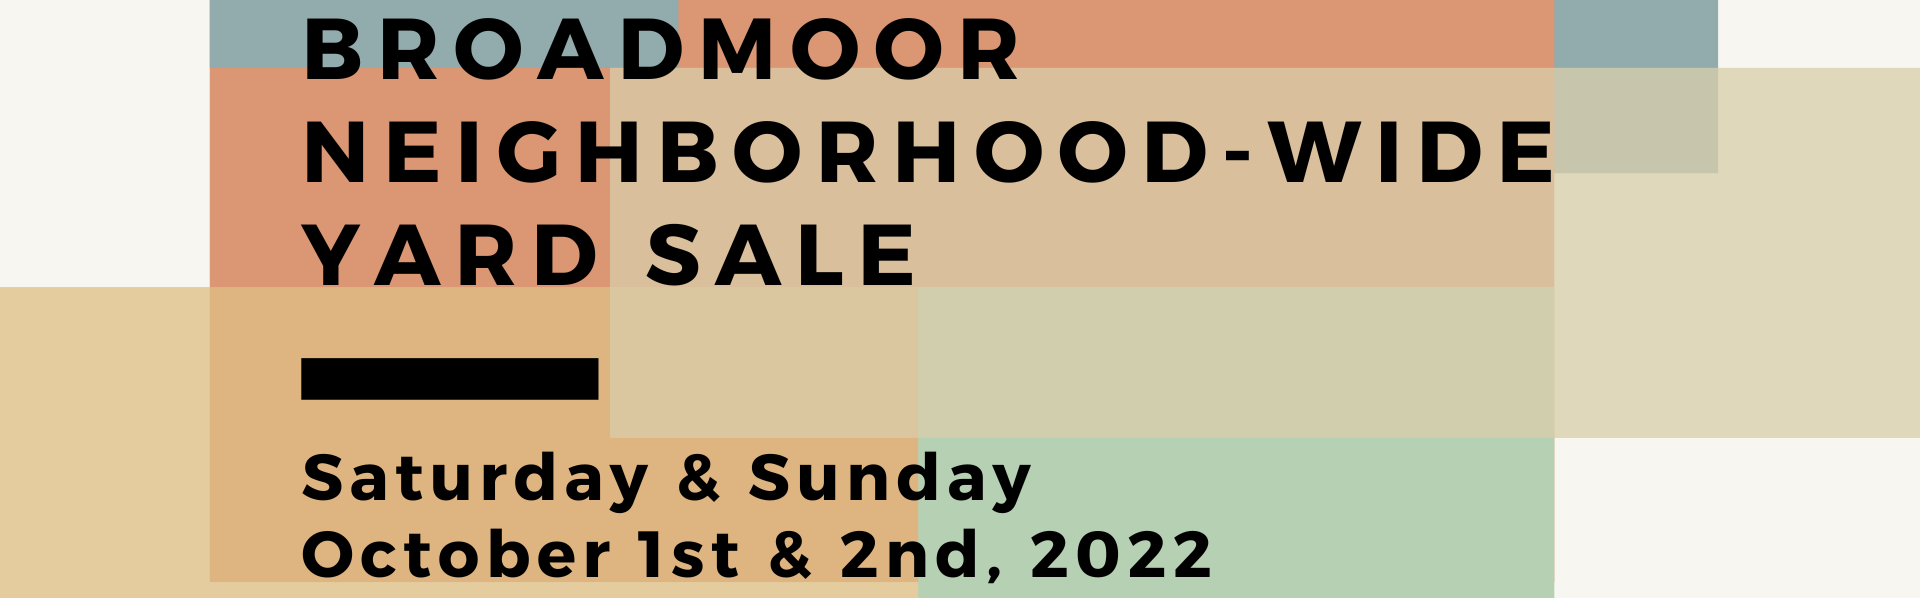 Broadmoor Yard Sale